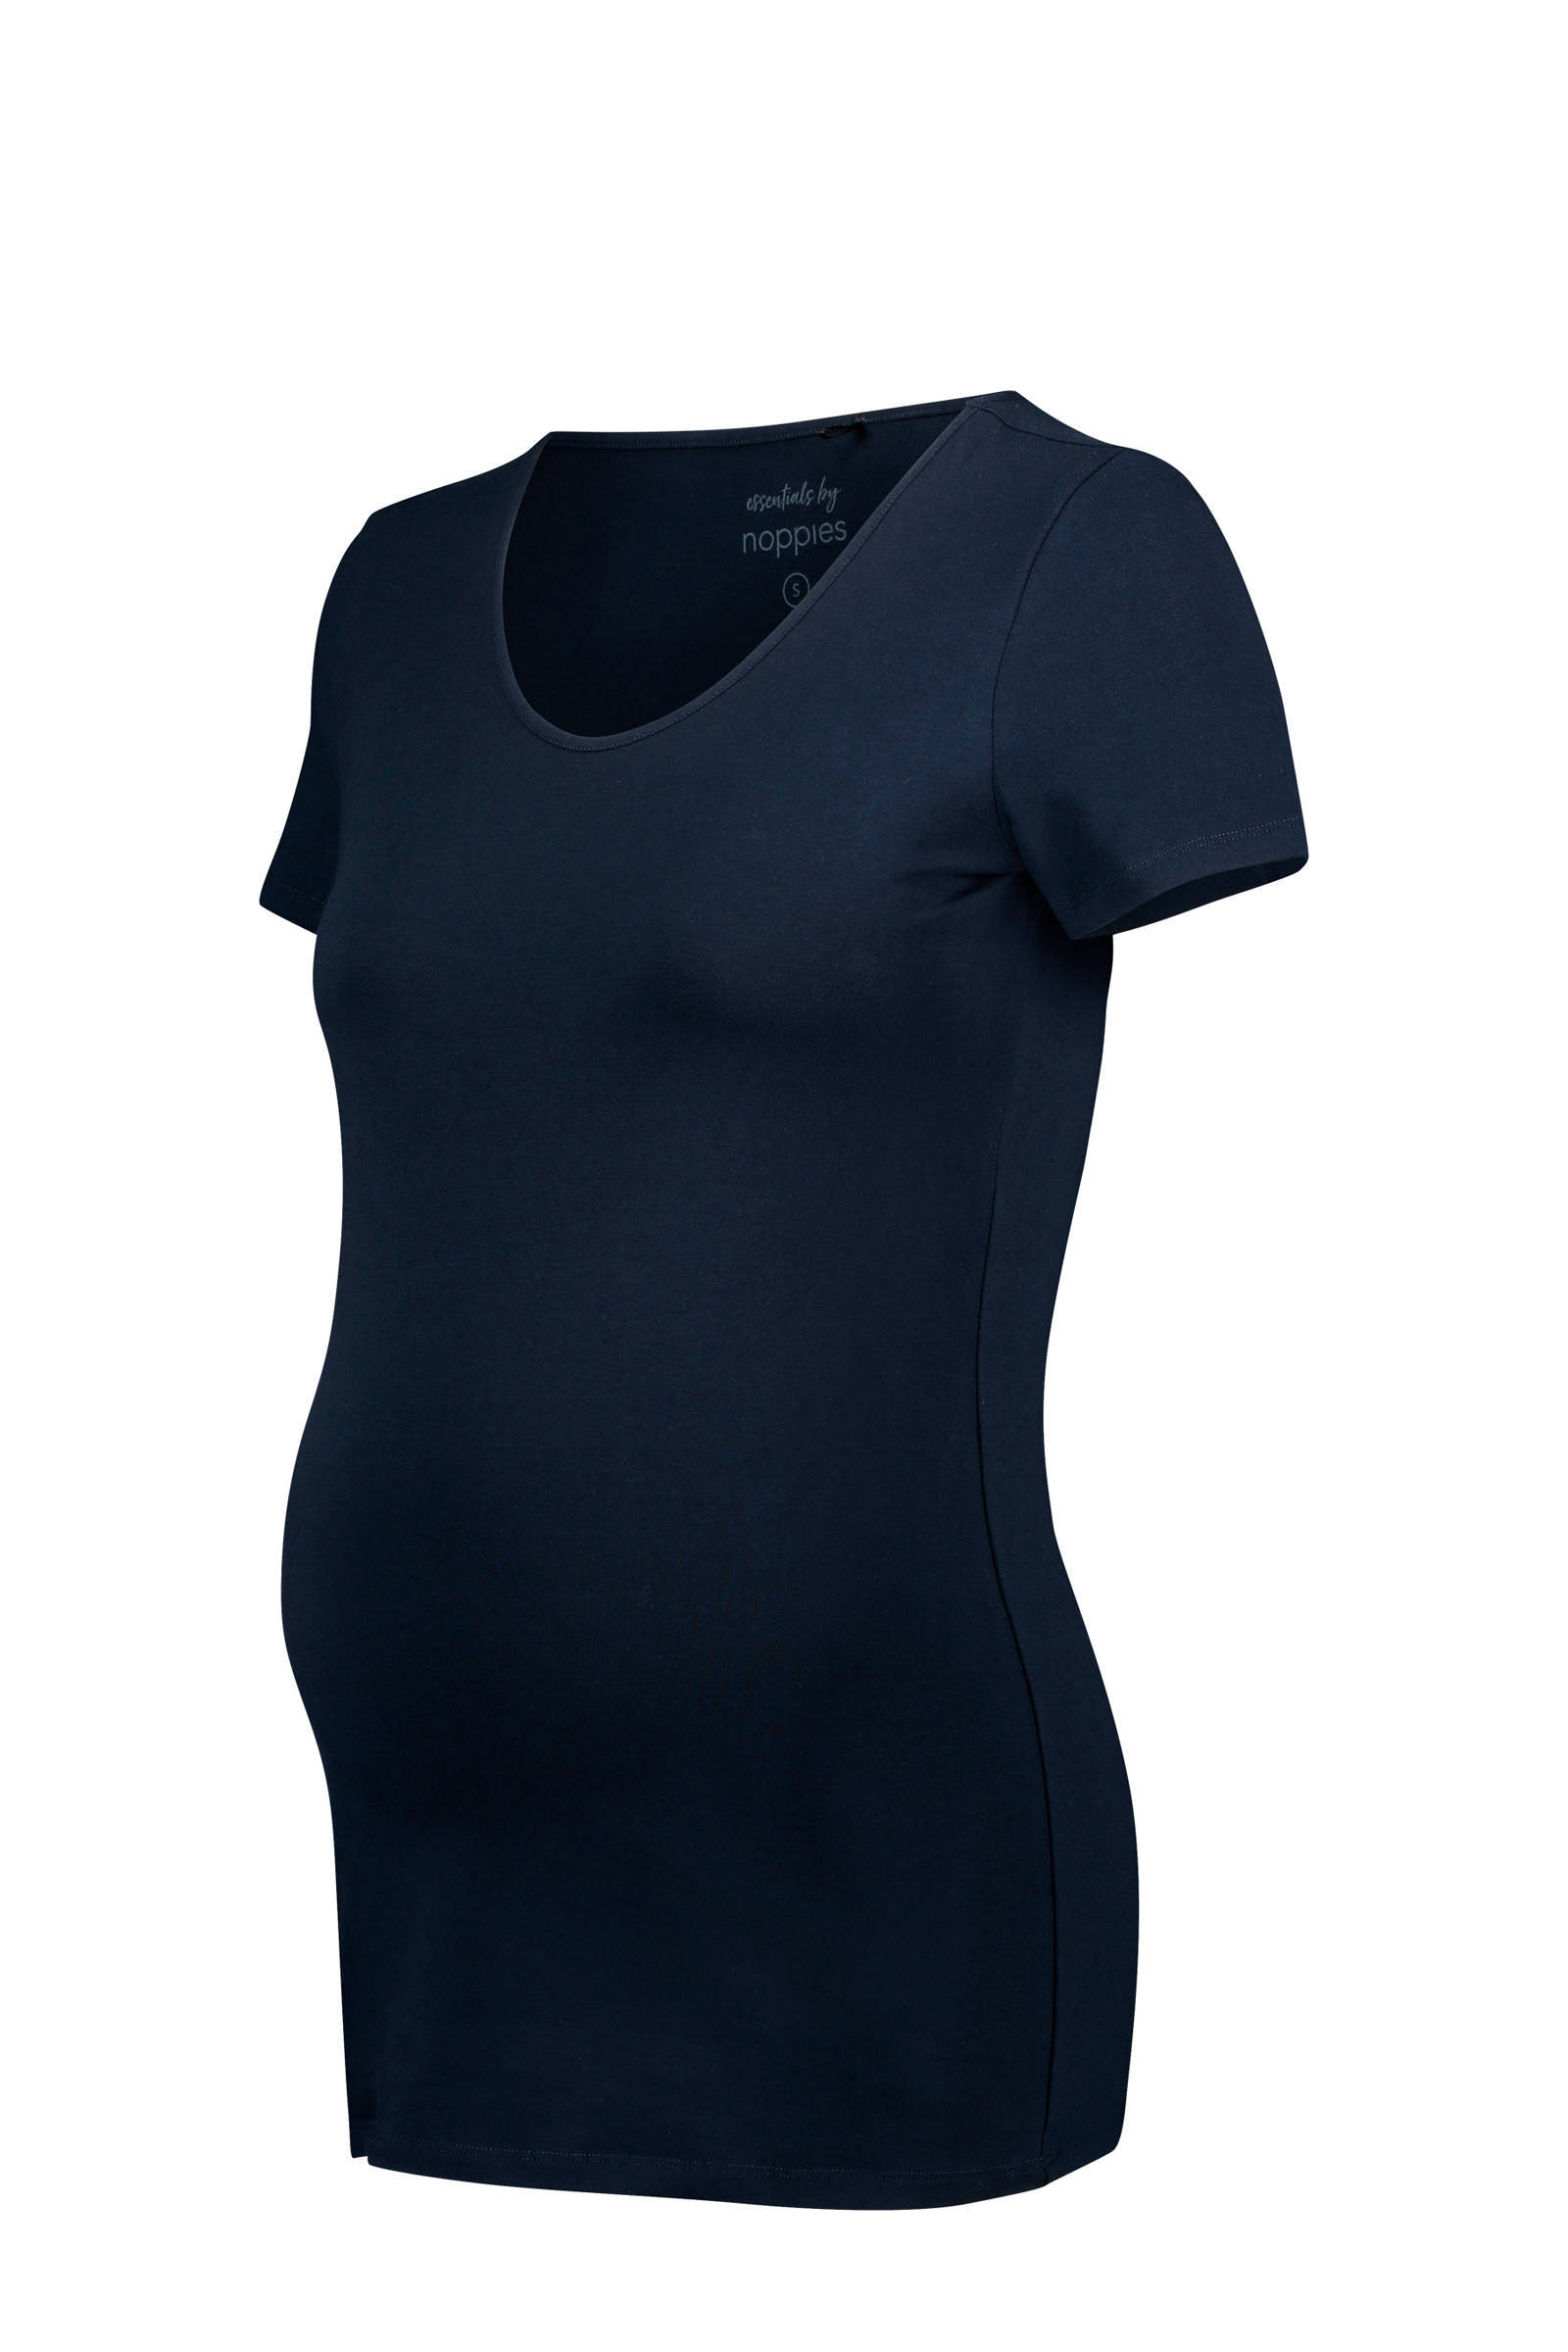 Noppies zwangerschaps T shirt Berlin donkerblauw online kopen